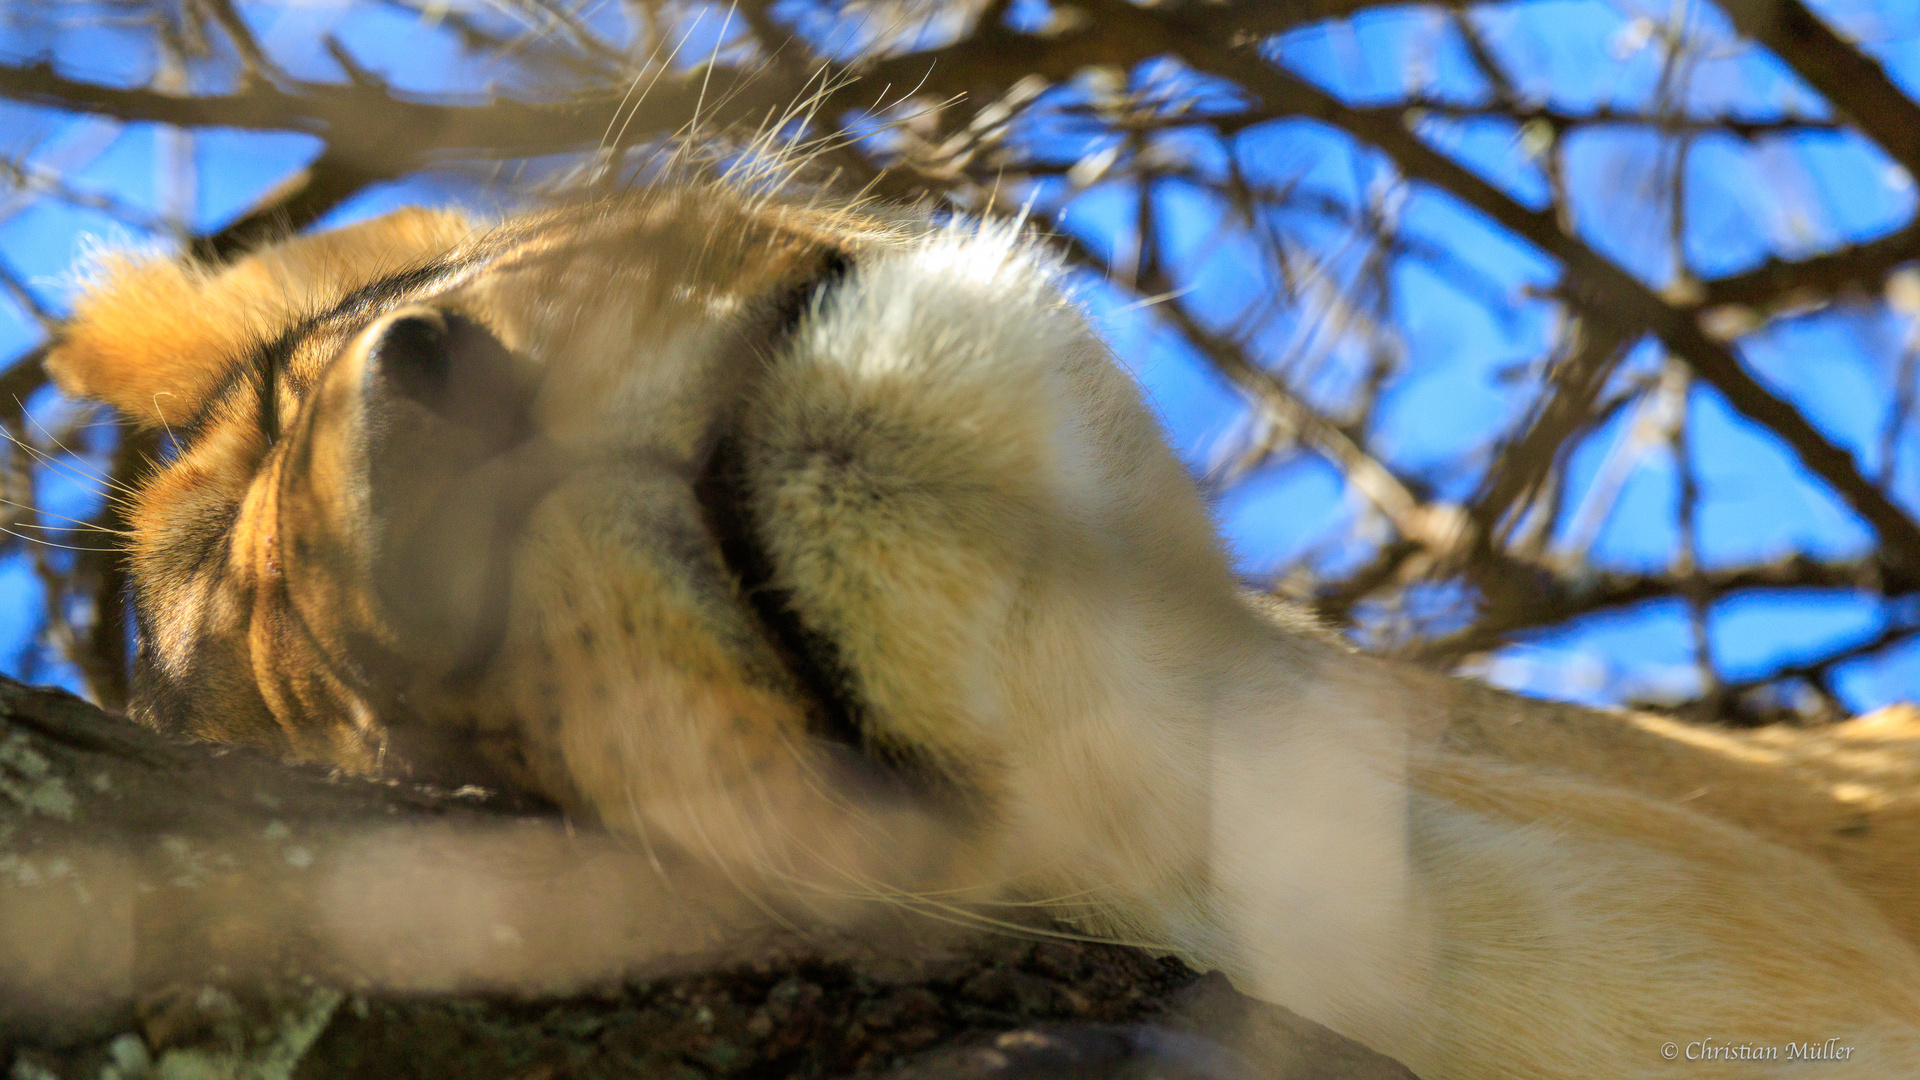 Schlafende Löwin in Baumkrone